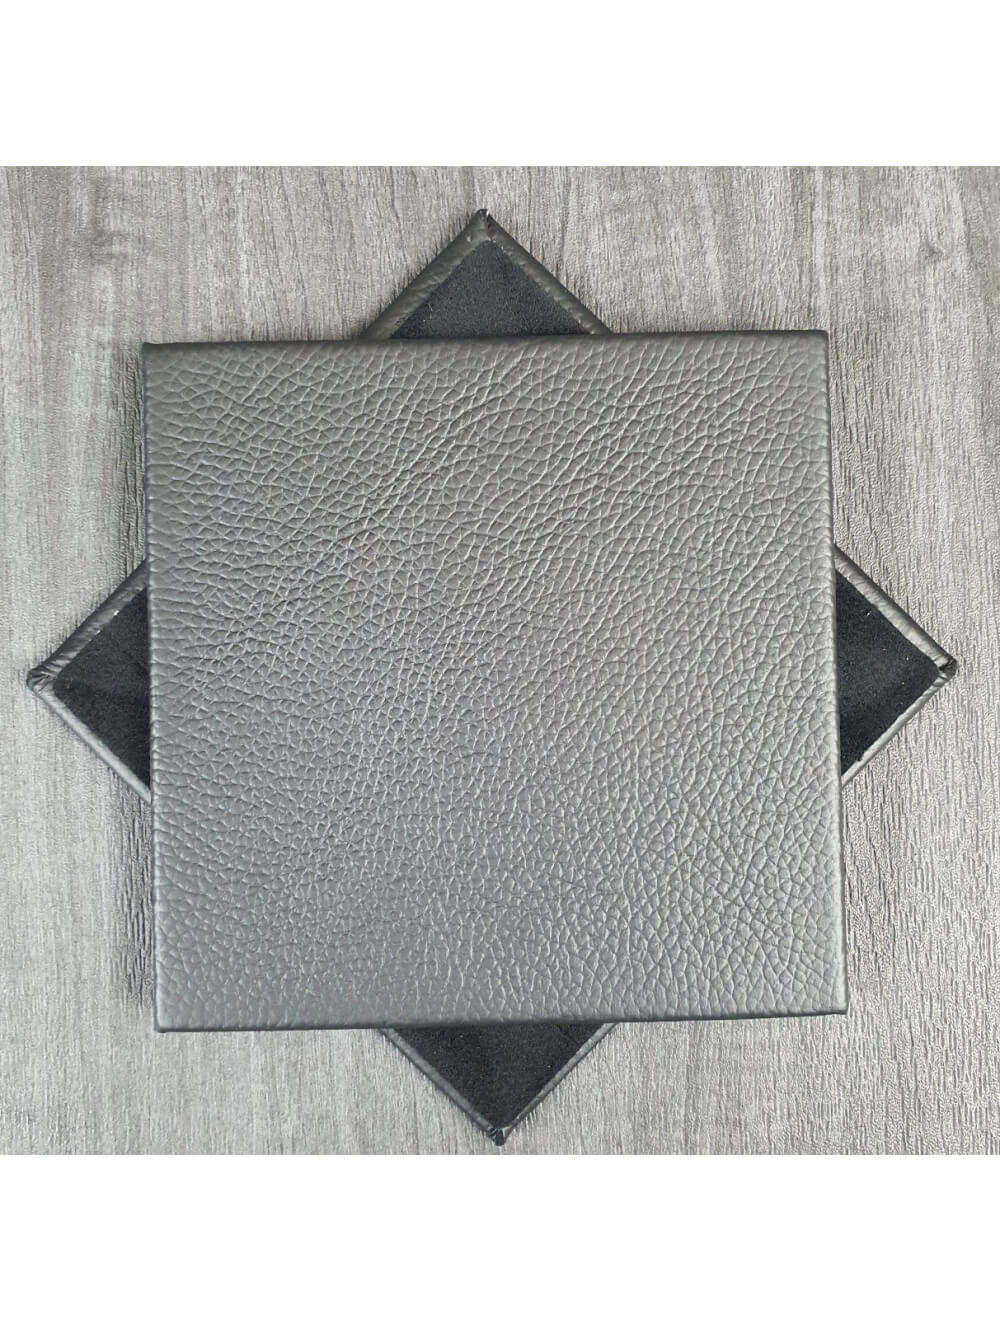 Black Shelly Leather Coaster- 10 cm Sq (articolo di vendita)